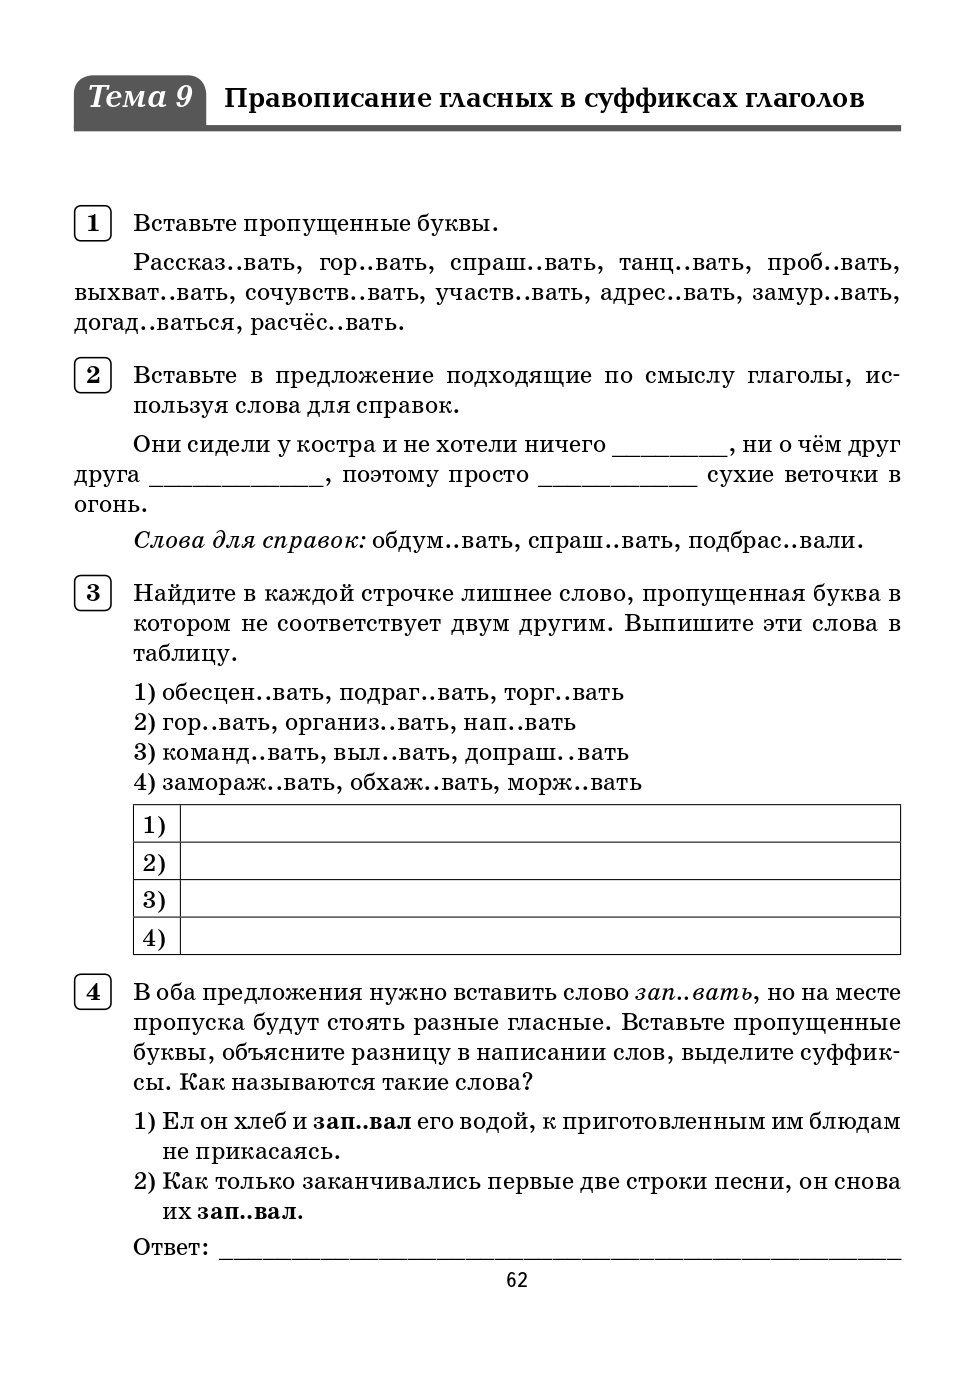 Русский язык. 6 класс. Орфографический тренинг.